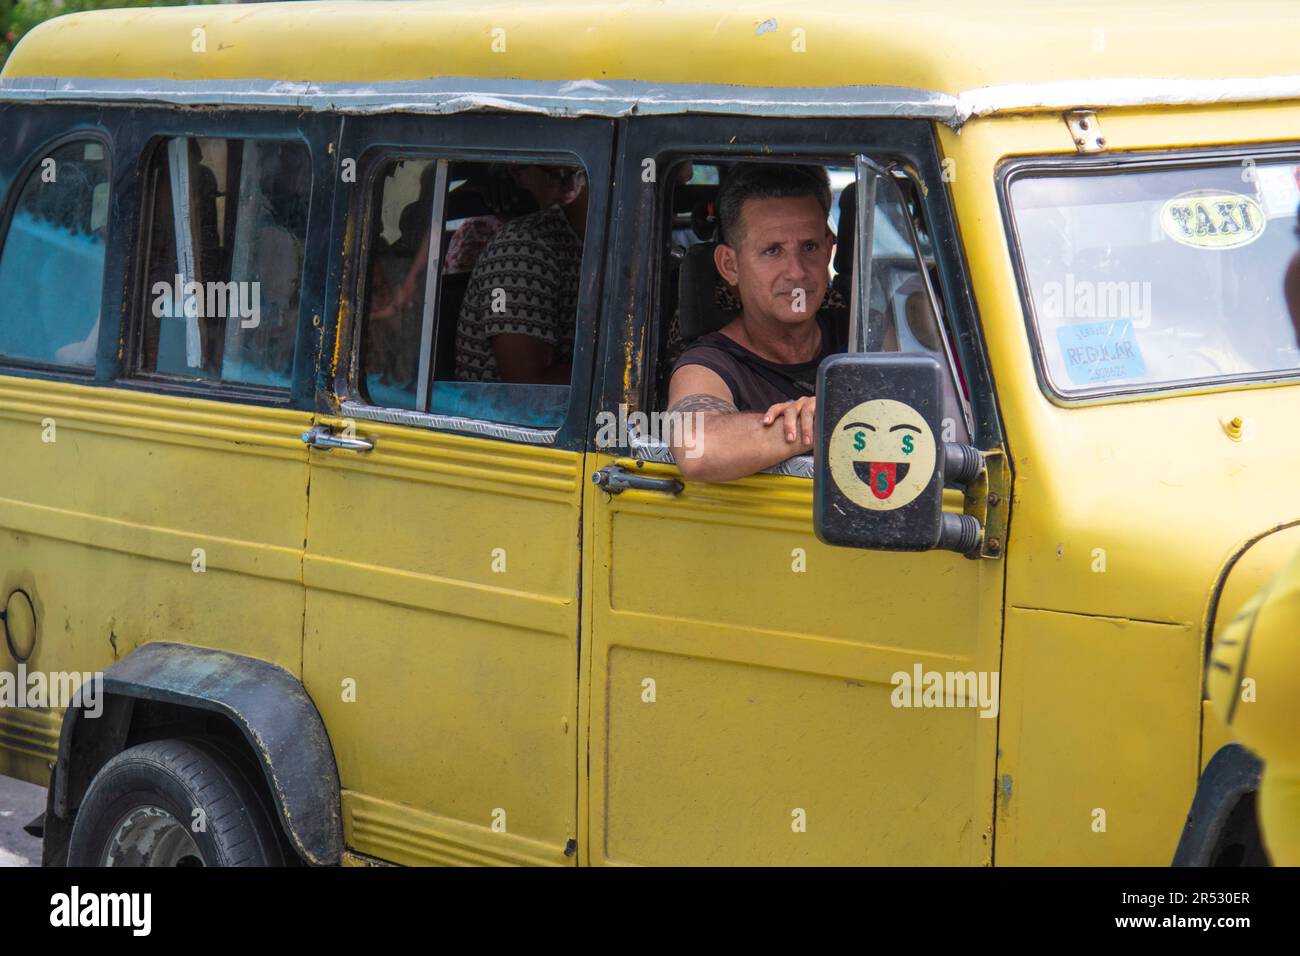 Der Passagier in einem kubanischen Taxi schaut aus dem Fenster und lächelt, während das Taxi die Straße in Havanna, Kuba, hinunter fährt. Stockfoto